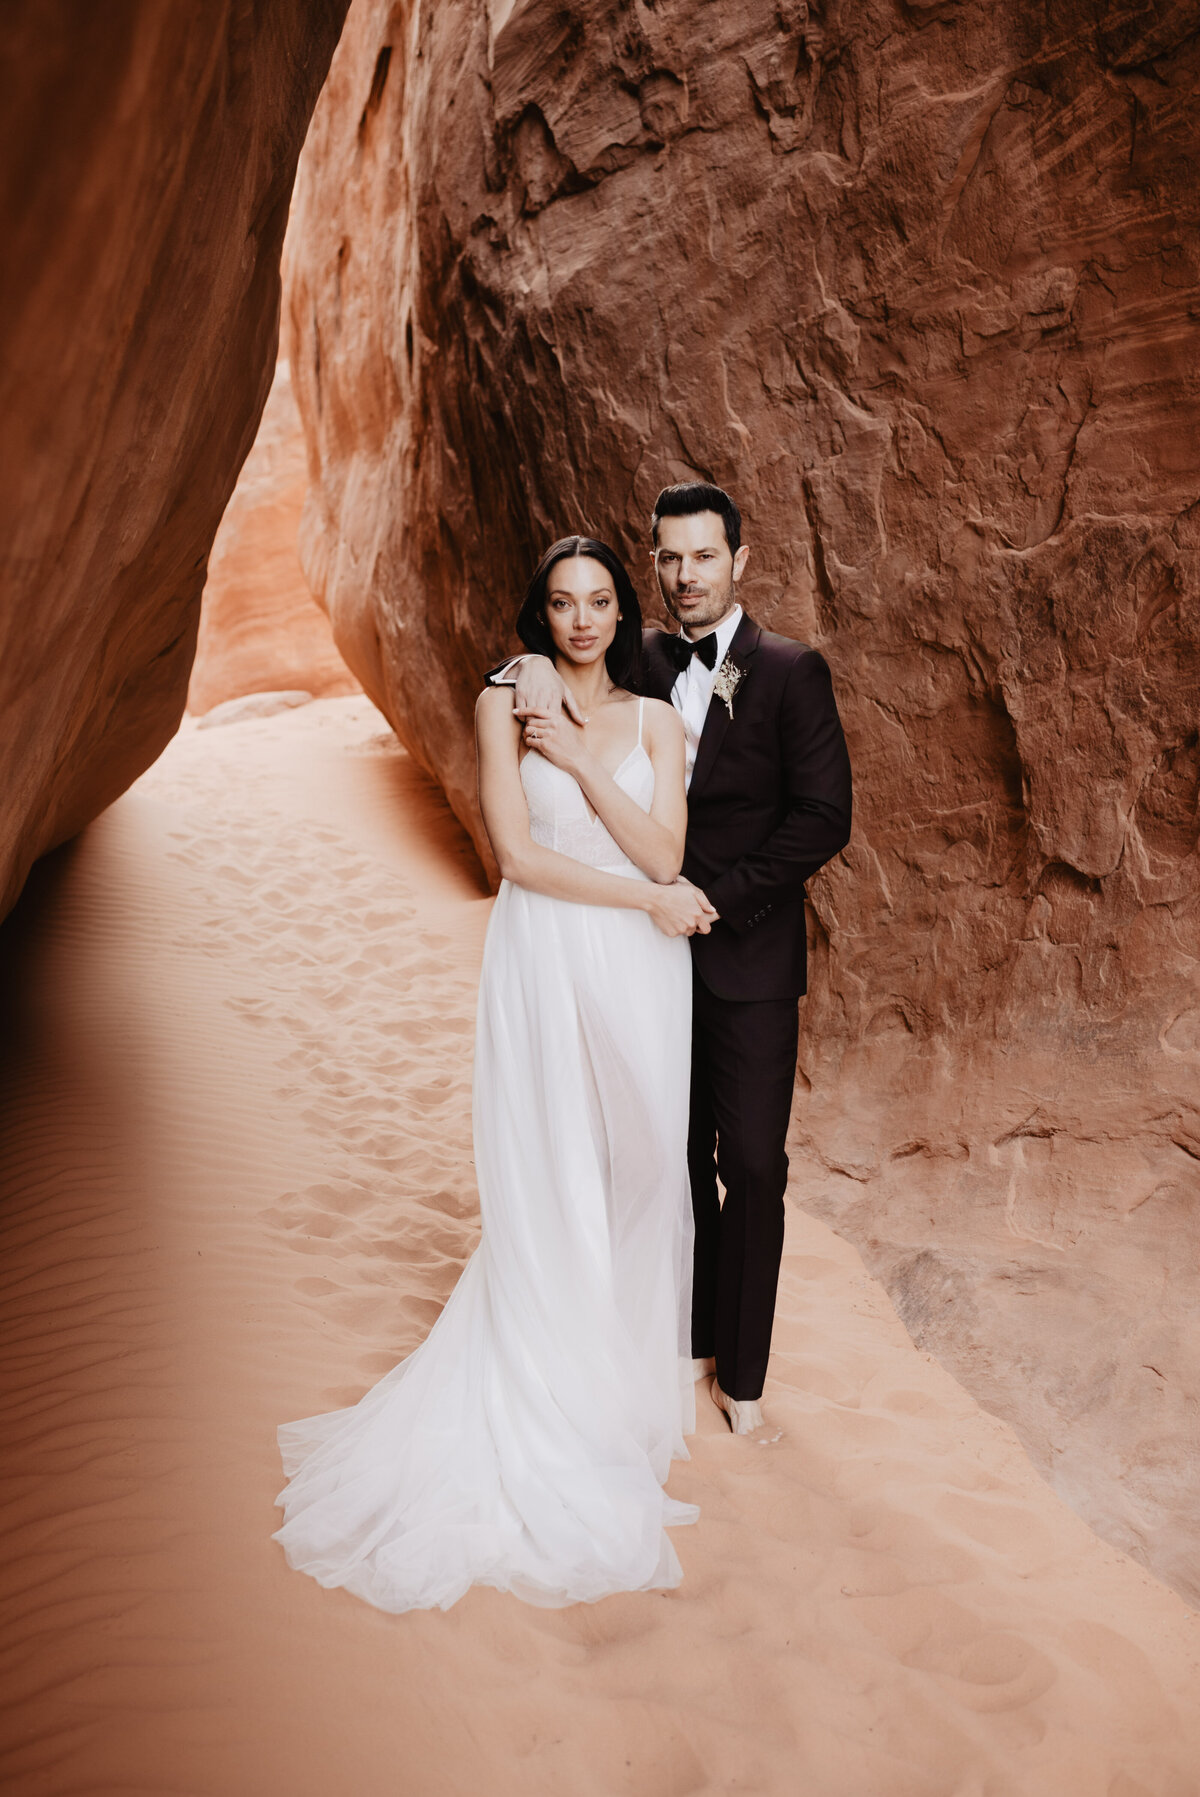 Utah elopement photographer captures bride and groom holding hands